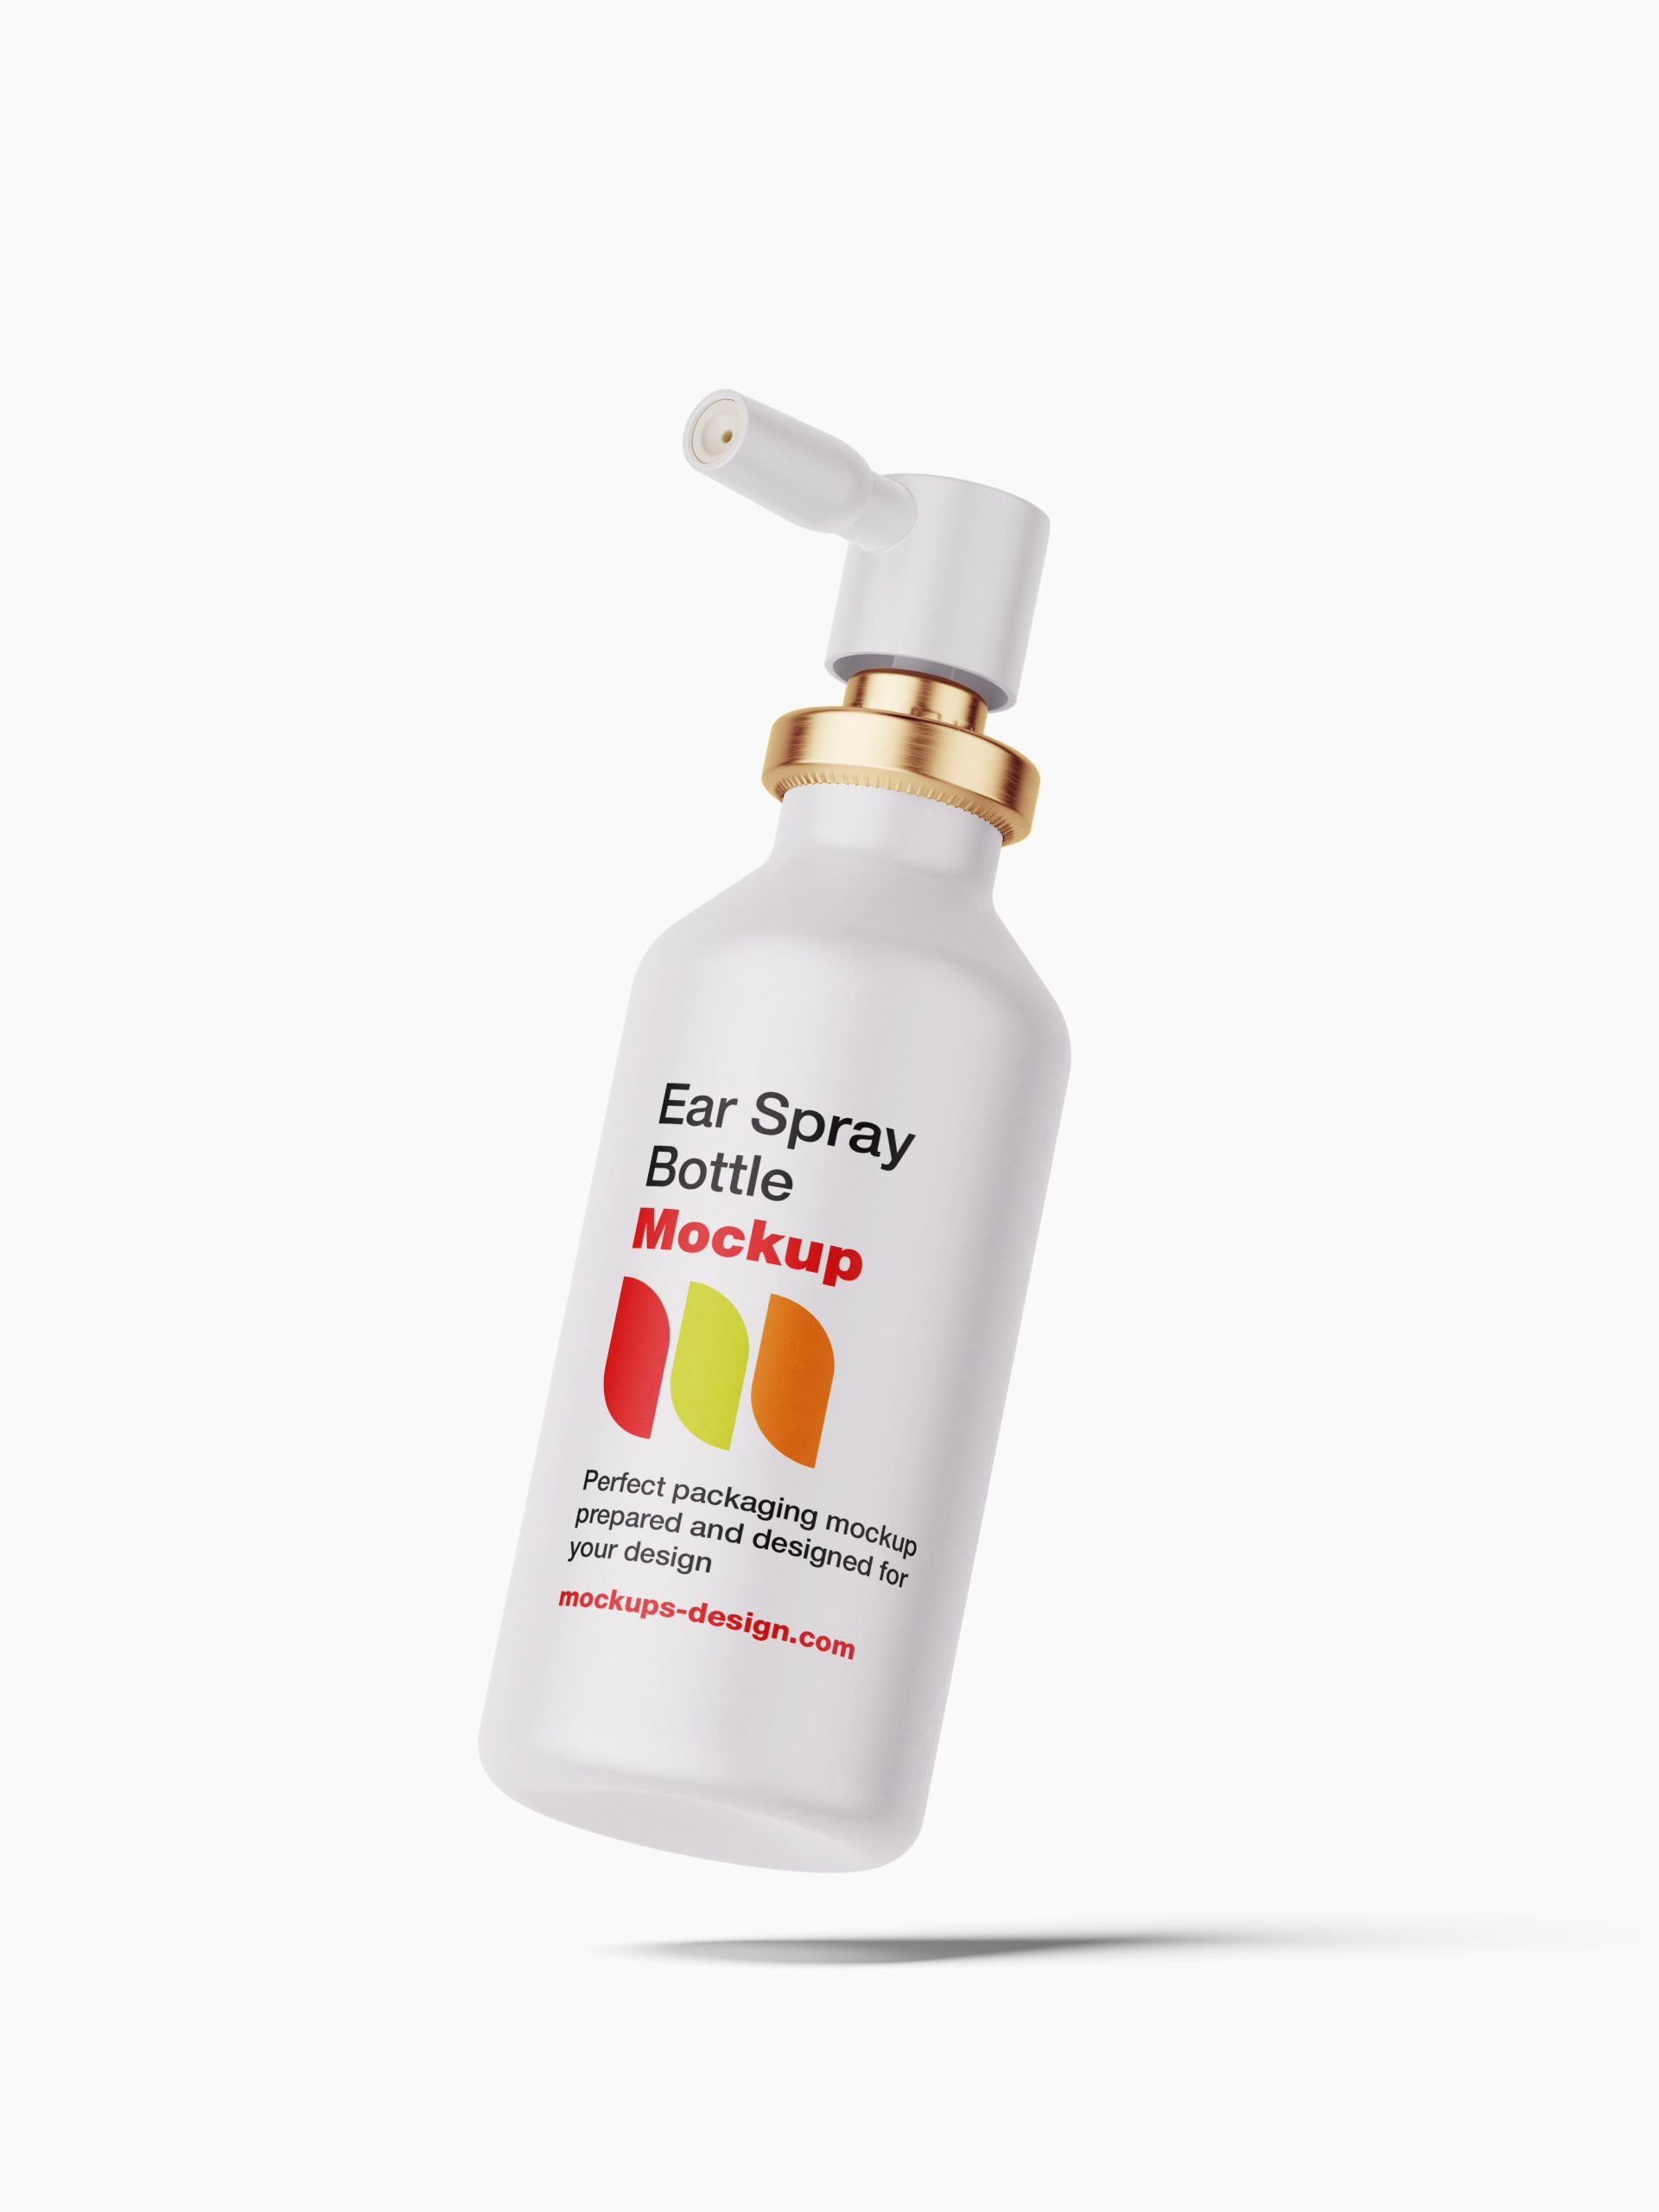 Ear bottle spray mockup